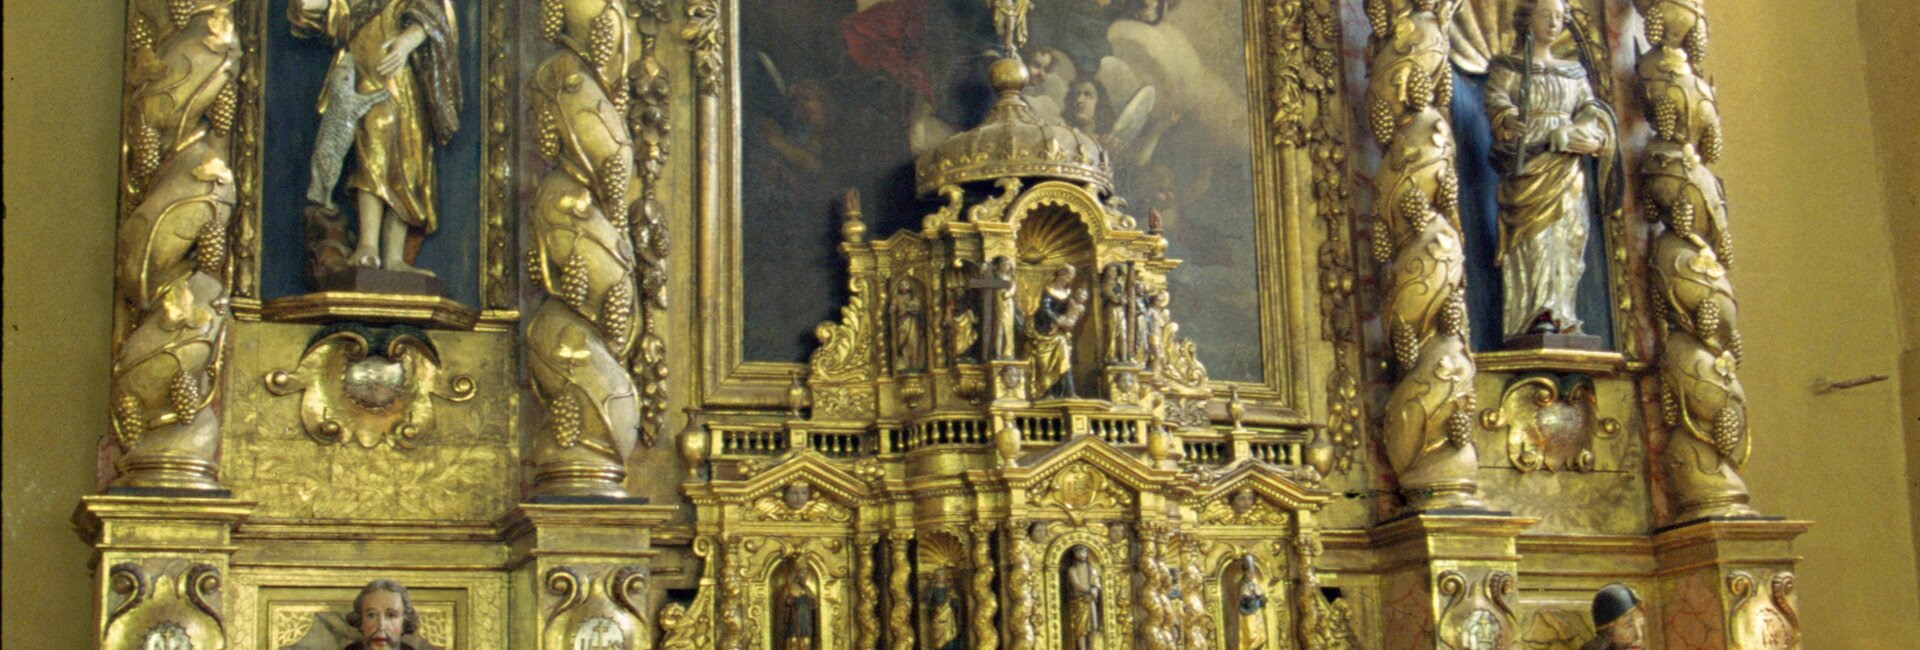 La chapelle des Pénitents de Chaudes-Aigues dans le 15